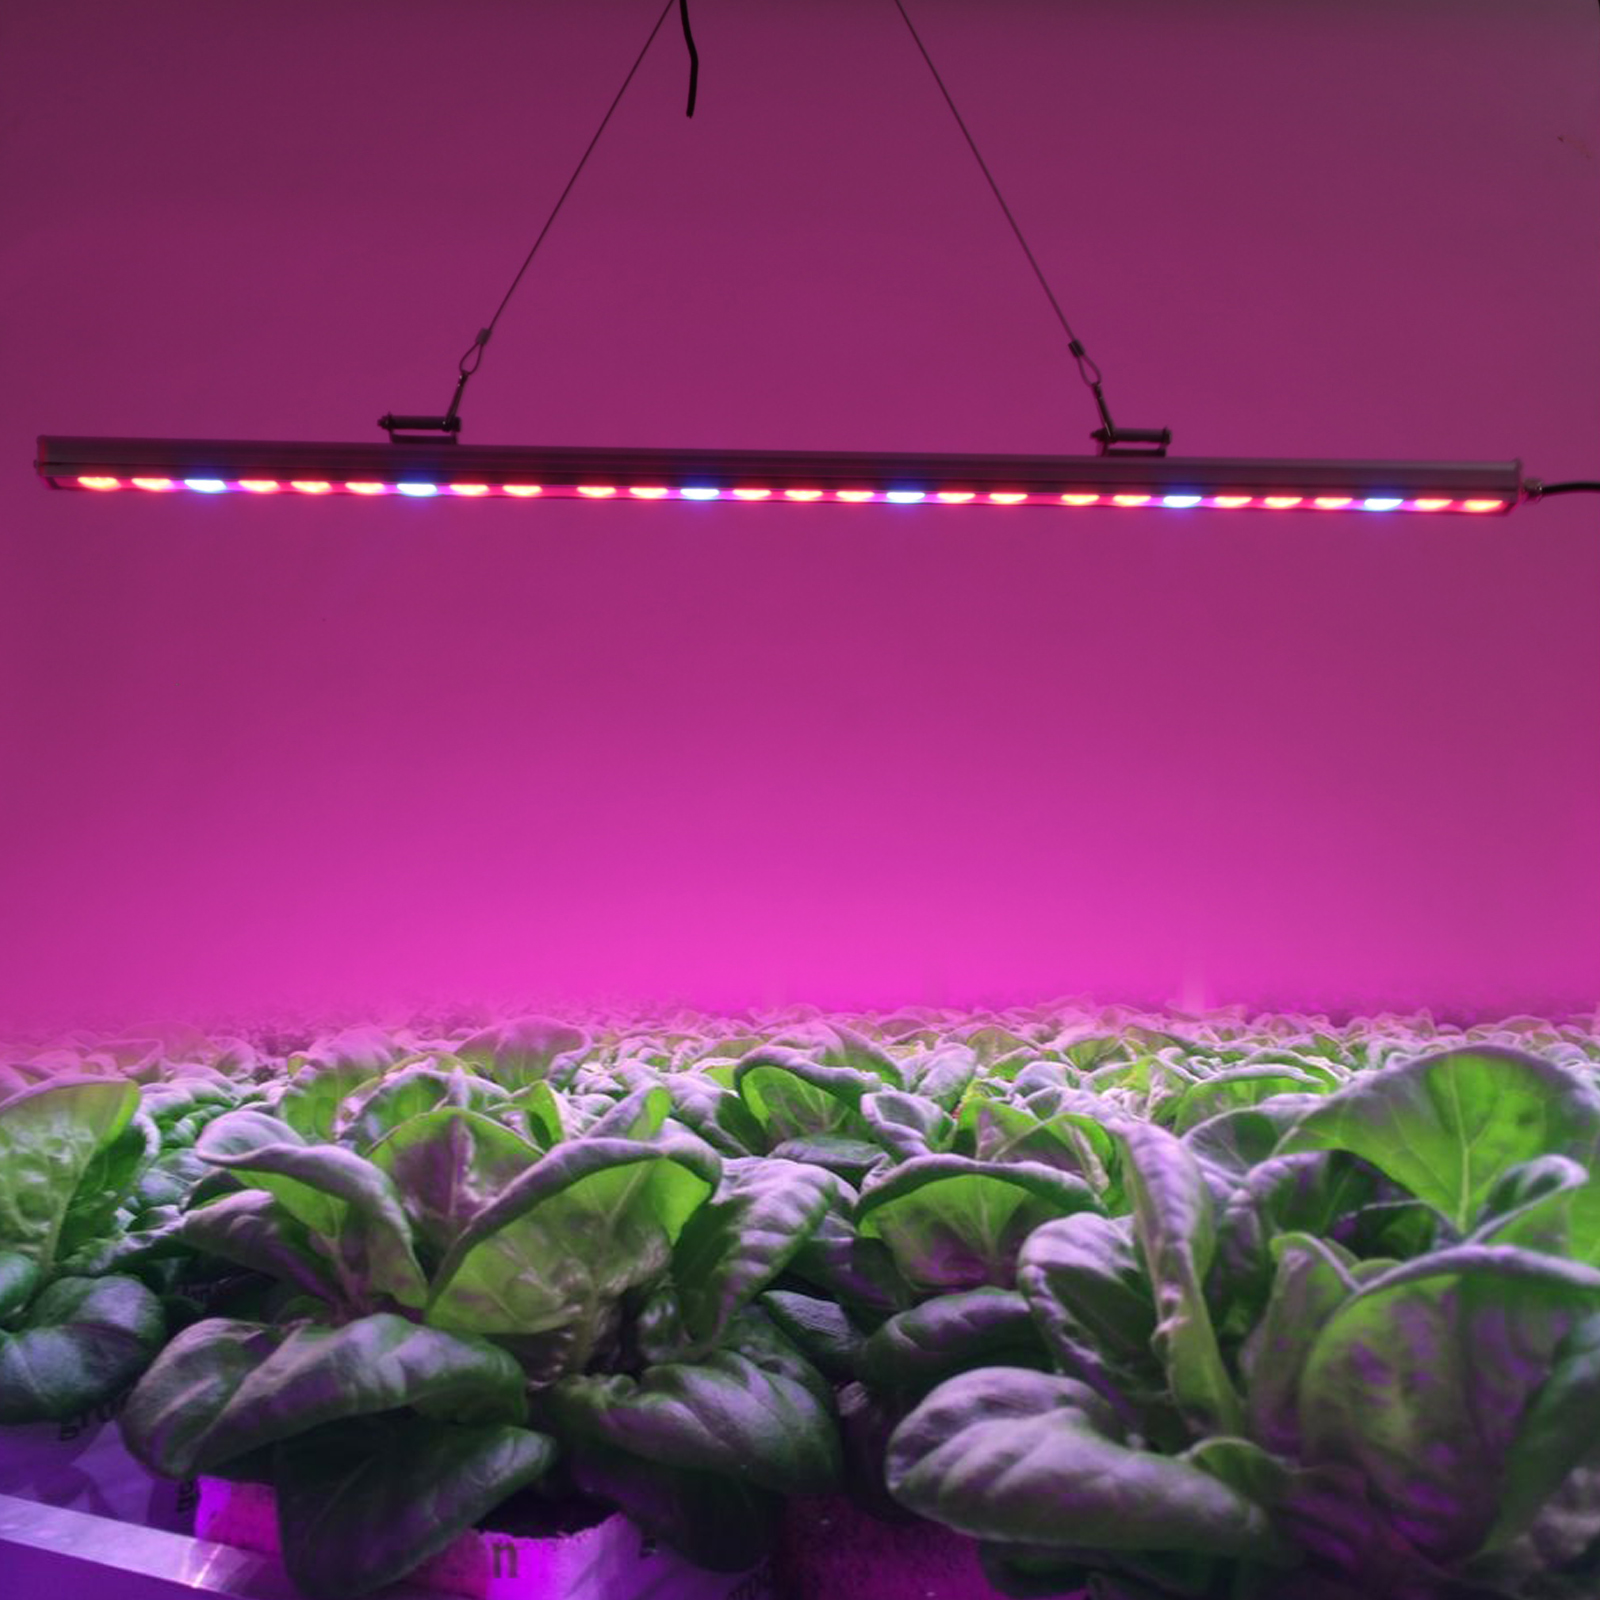 科学技术的发展不断地改变我们的生活方式、工作方式，而植物照明技术的成熟正使传统农业“面朝黄土，背朝天”的耕种方式出现转变。在通用照明市场竞争剧烈，环保健康问题日益突出的客观环境影响下，原是以日本企业为主导的LED植物灯照明，跃升成为细分市场的一片新蓝海，引来飞利浦、欧司朗、亿光等大批国际巨头的争相开拓，国内不少企业也纷纷涉足。